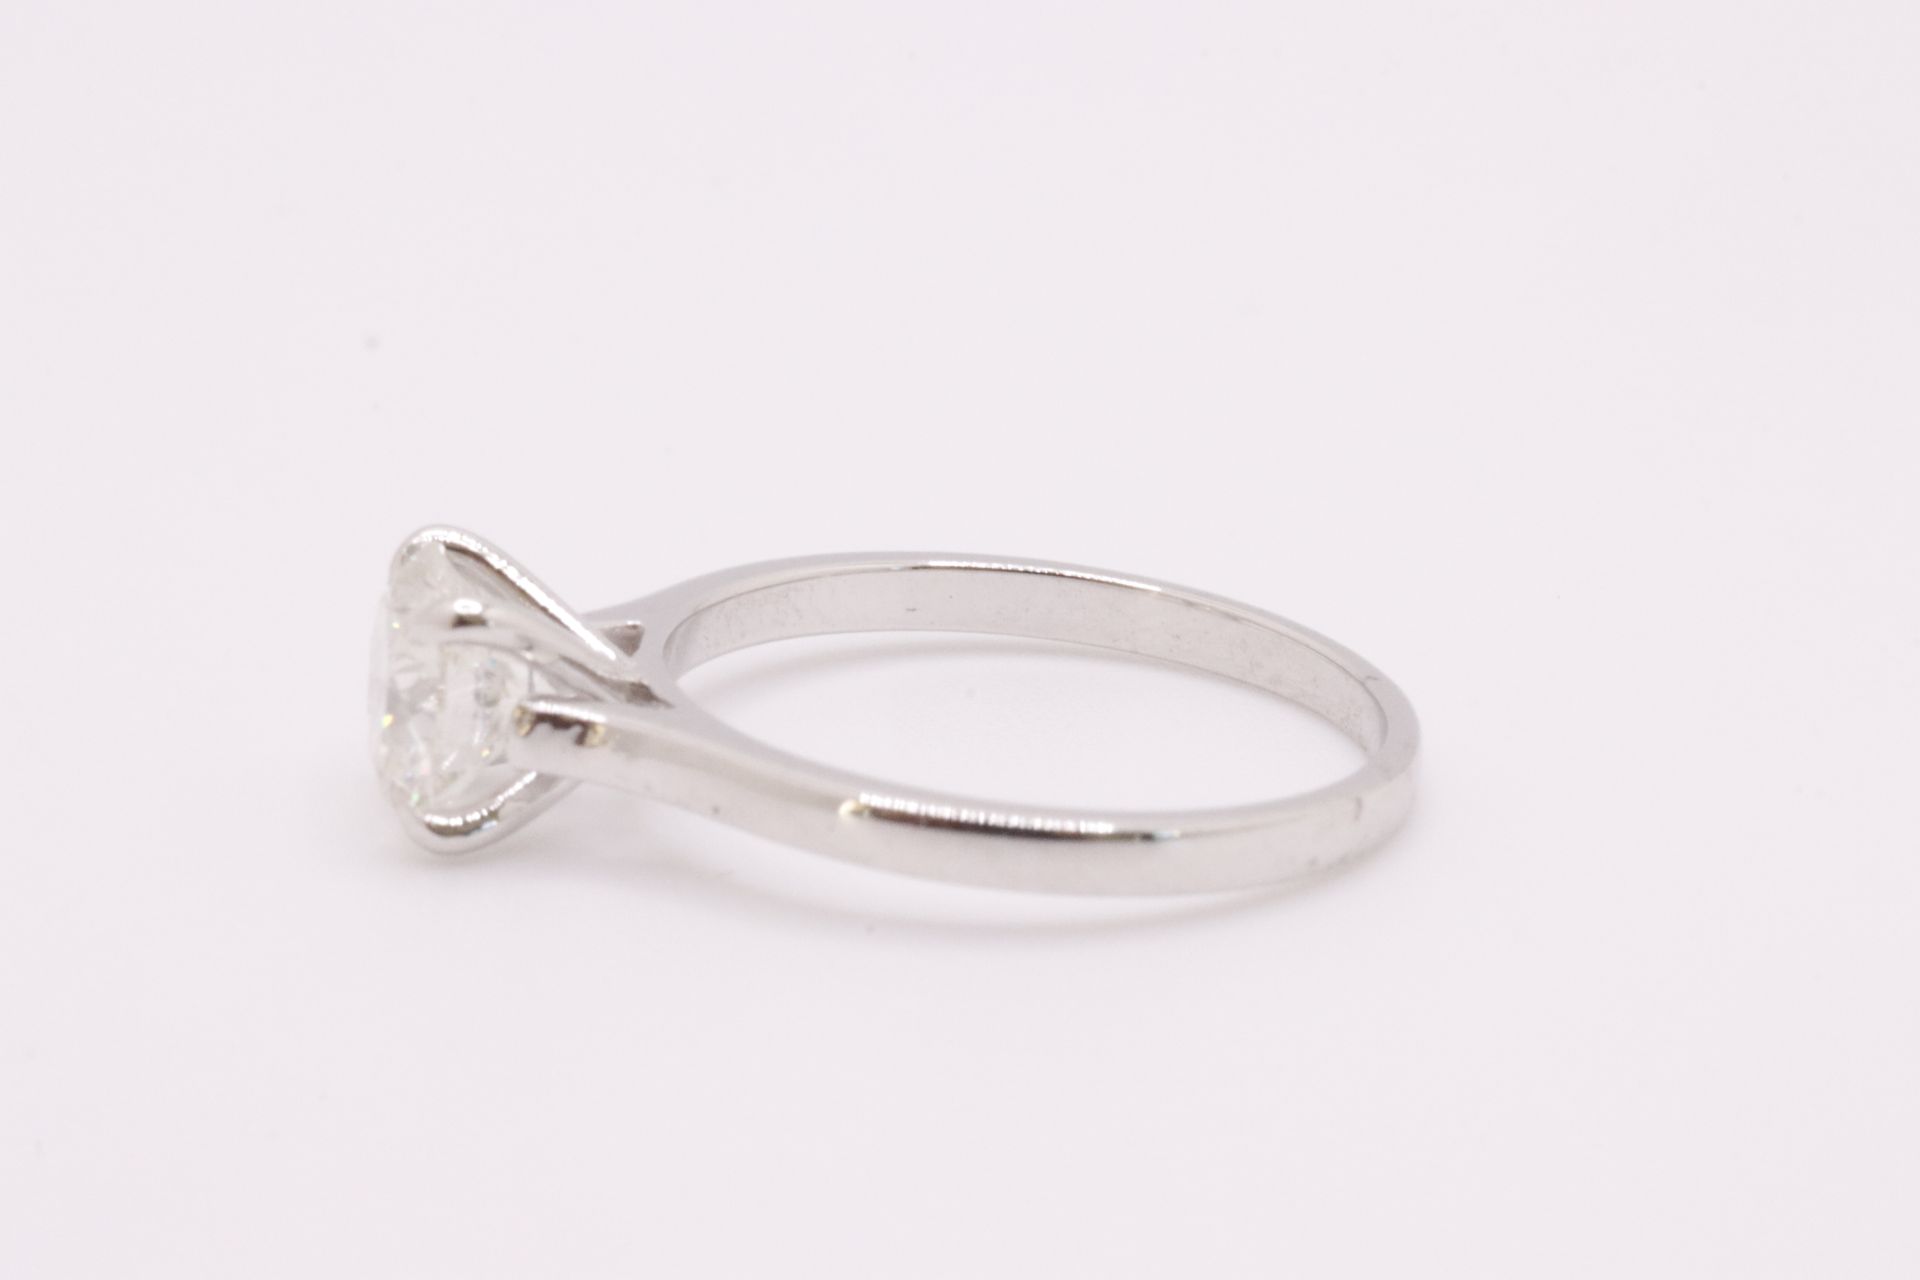 Round Brilliant Cut Natural Diamond Ring 1.09 Carat I Colour SI2 Clarity EX EX EX - GIA - Image 7 of 9